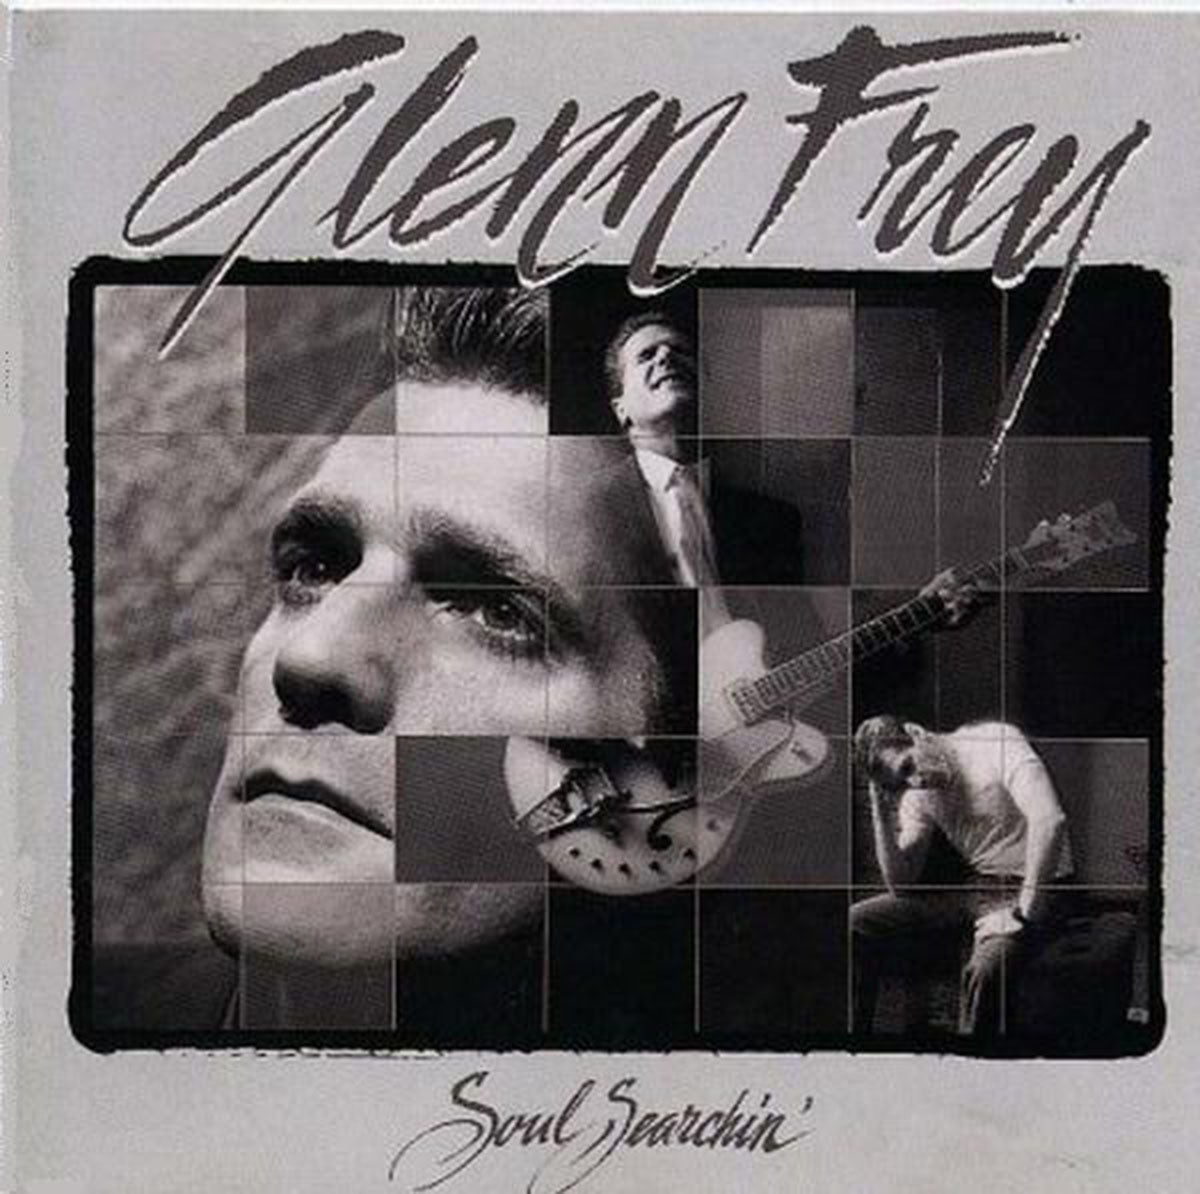 Glenn Frey – Soul Searchin'